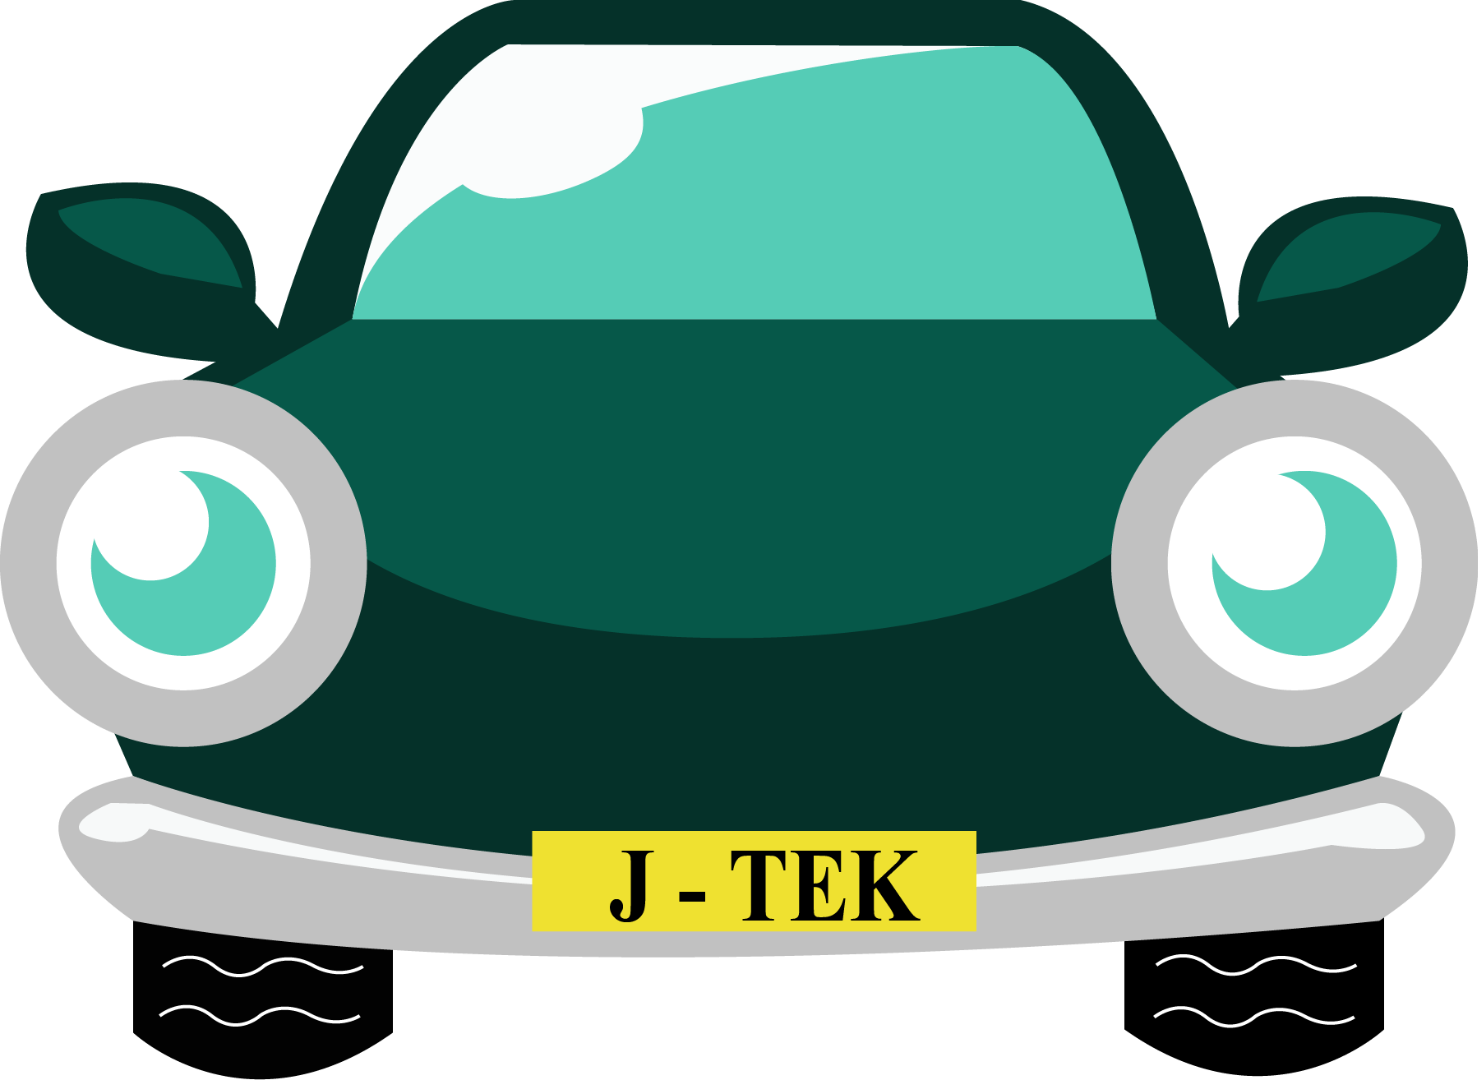 Cartoon Car With J-TEK Number Plate - Car MOT, Servicing & Tyres in Ely at J-Tek